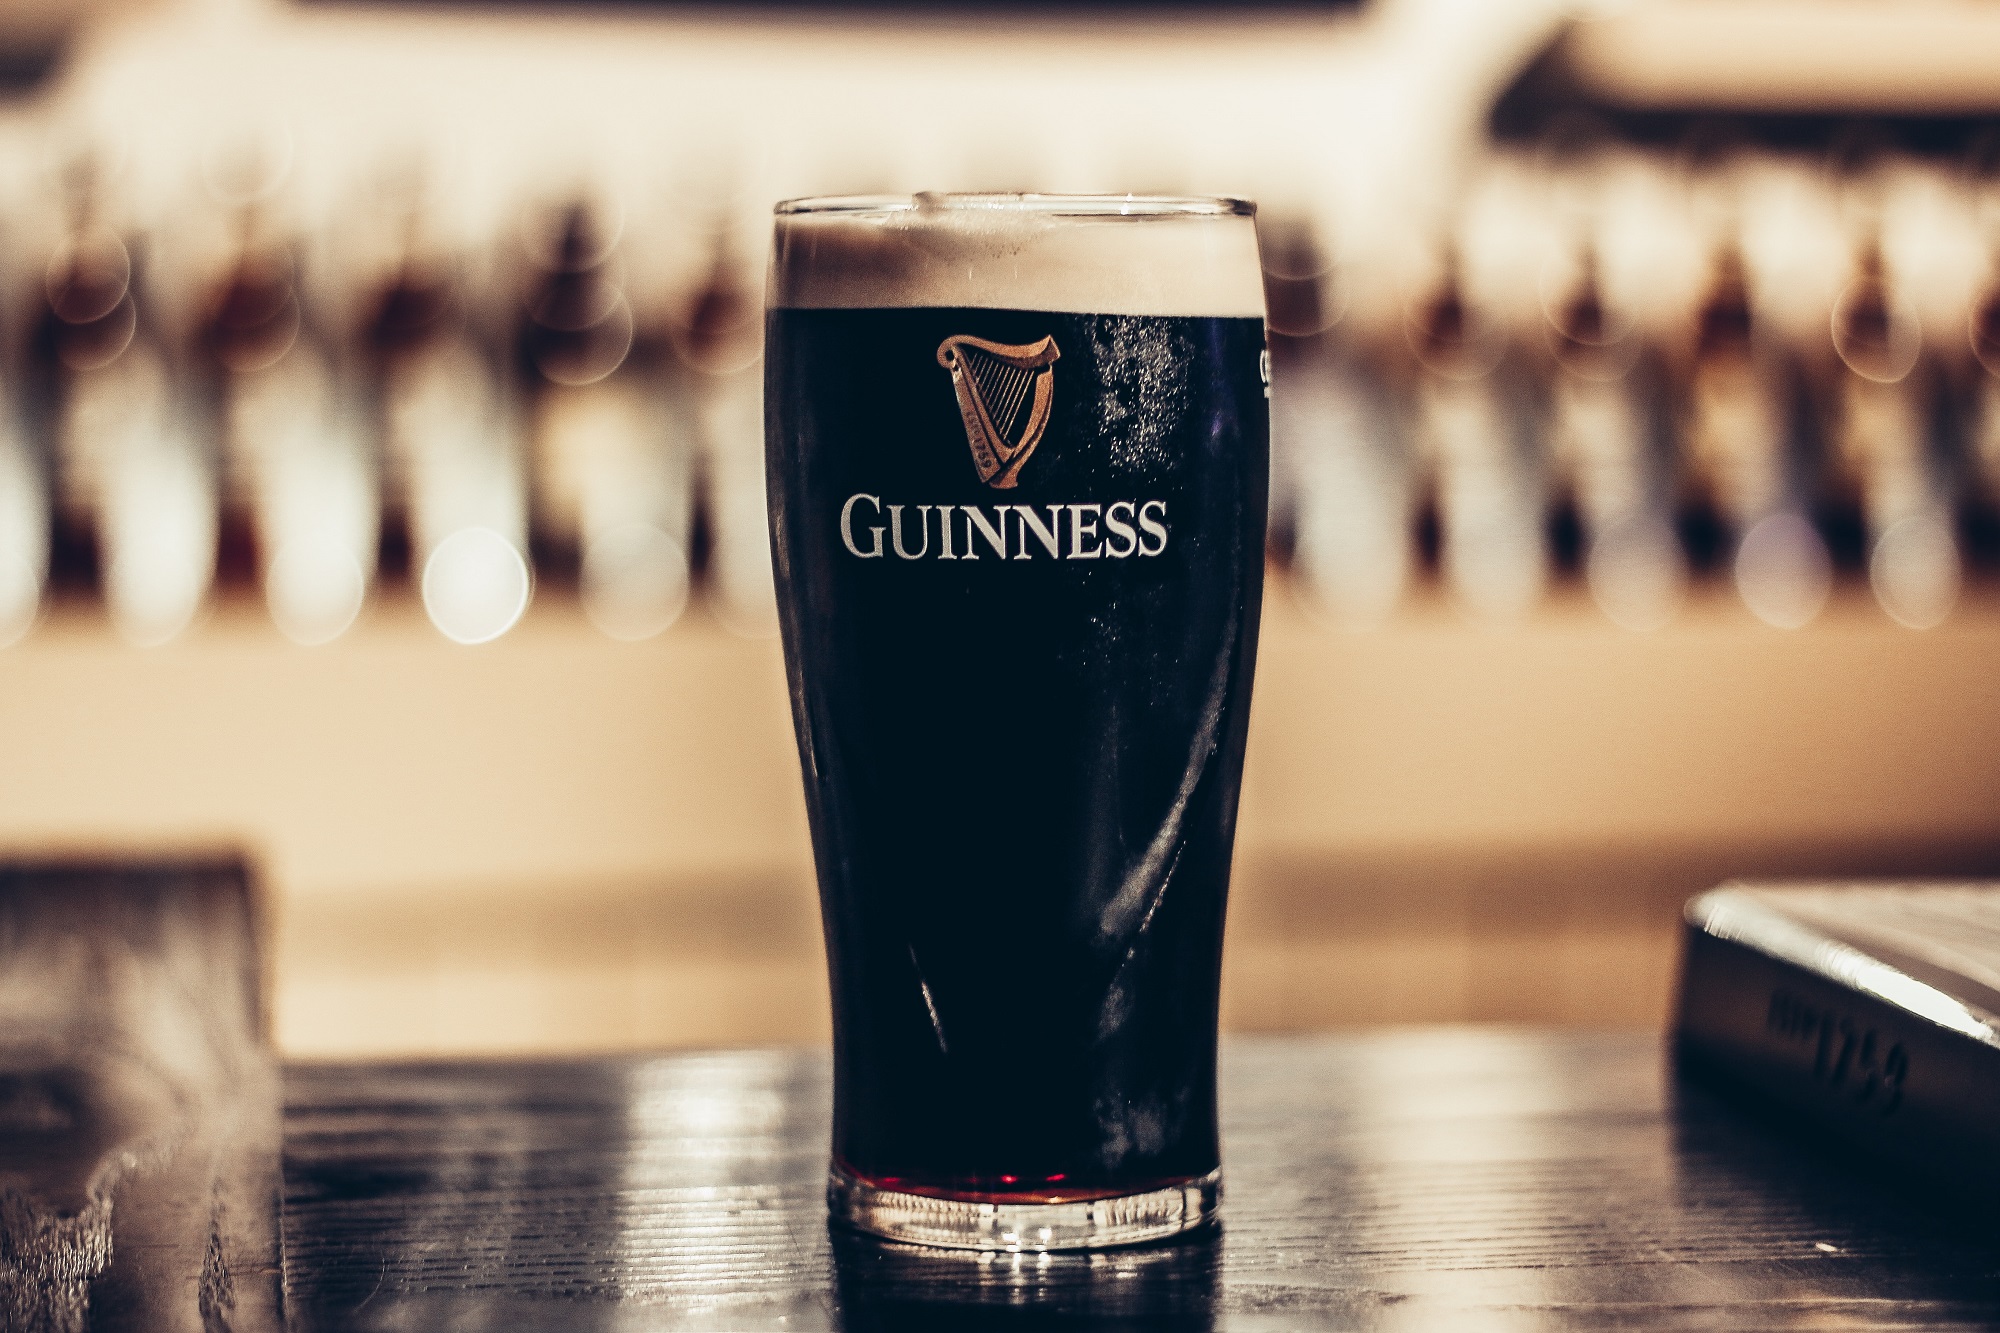 Sample Guinness in Ireland